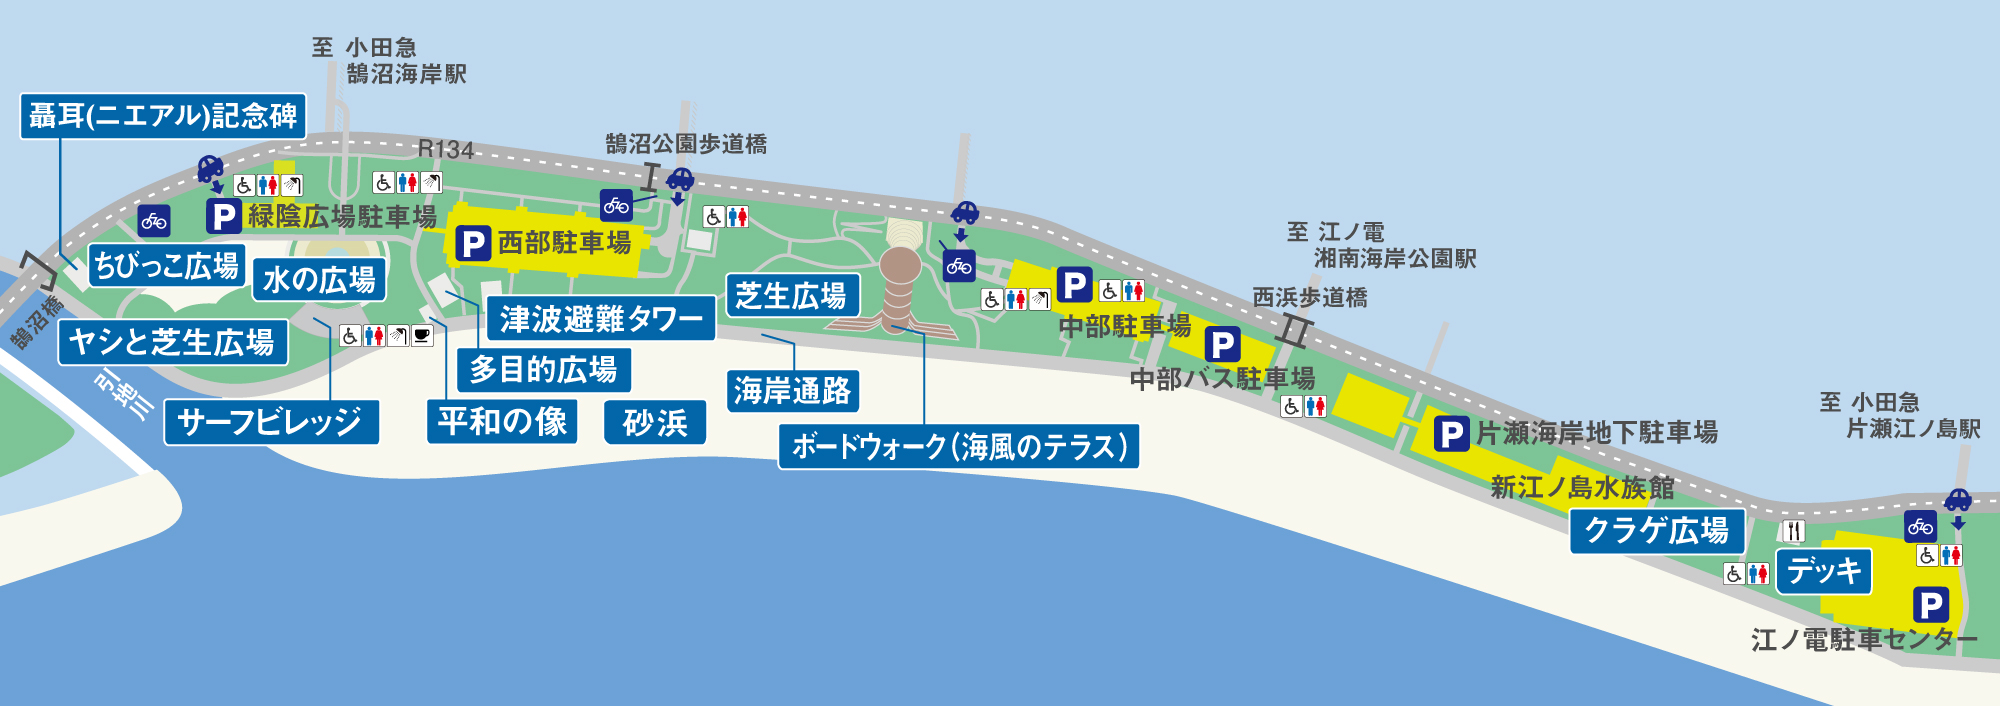 神奈川県立湘南海岸公園 園内マップ 湘南なぎさパーク